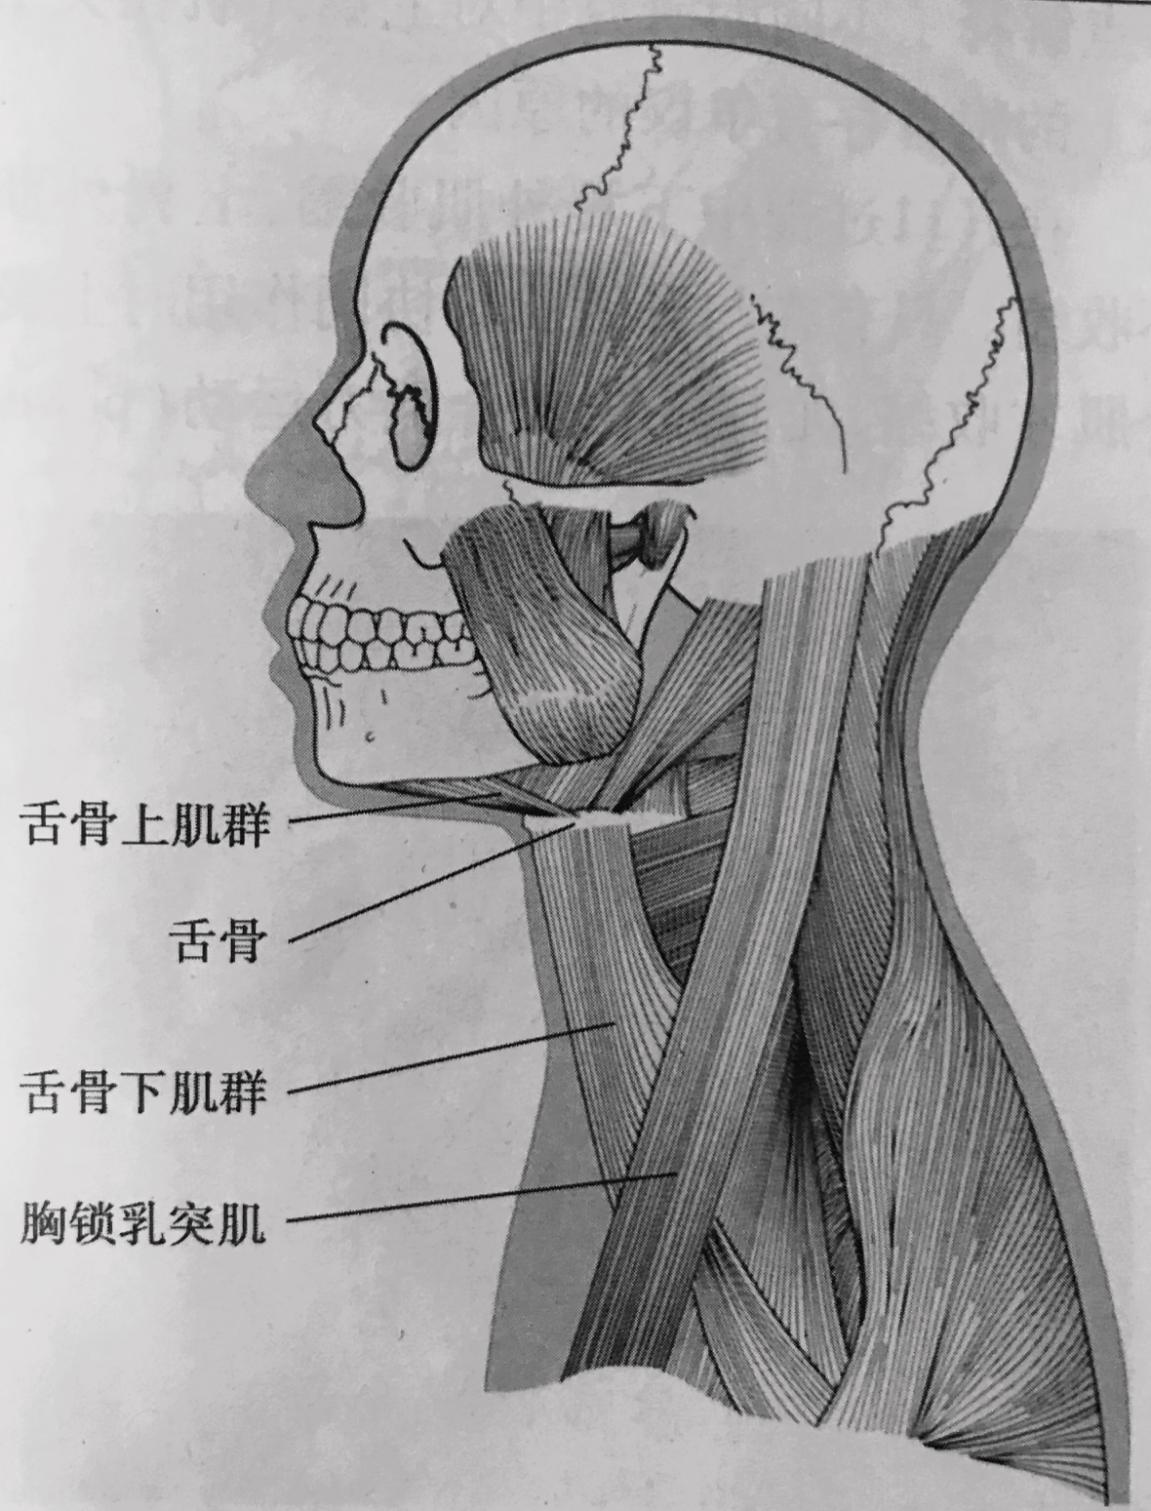 39.下颌骨 (外侧面观)-系统解剖学-医学